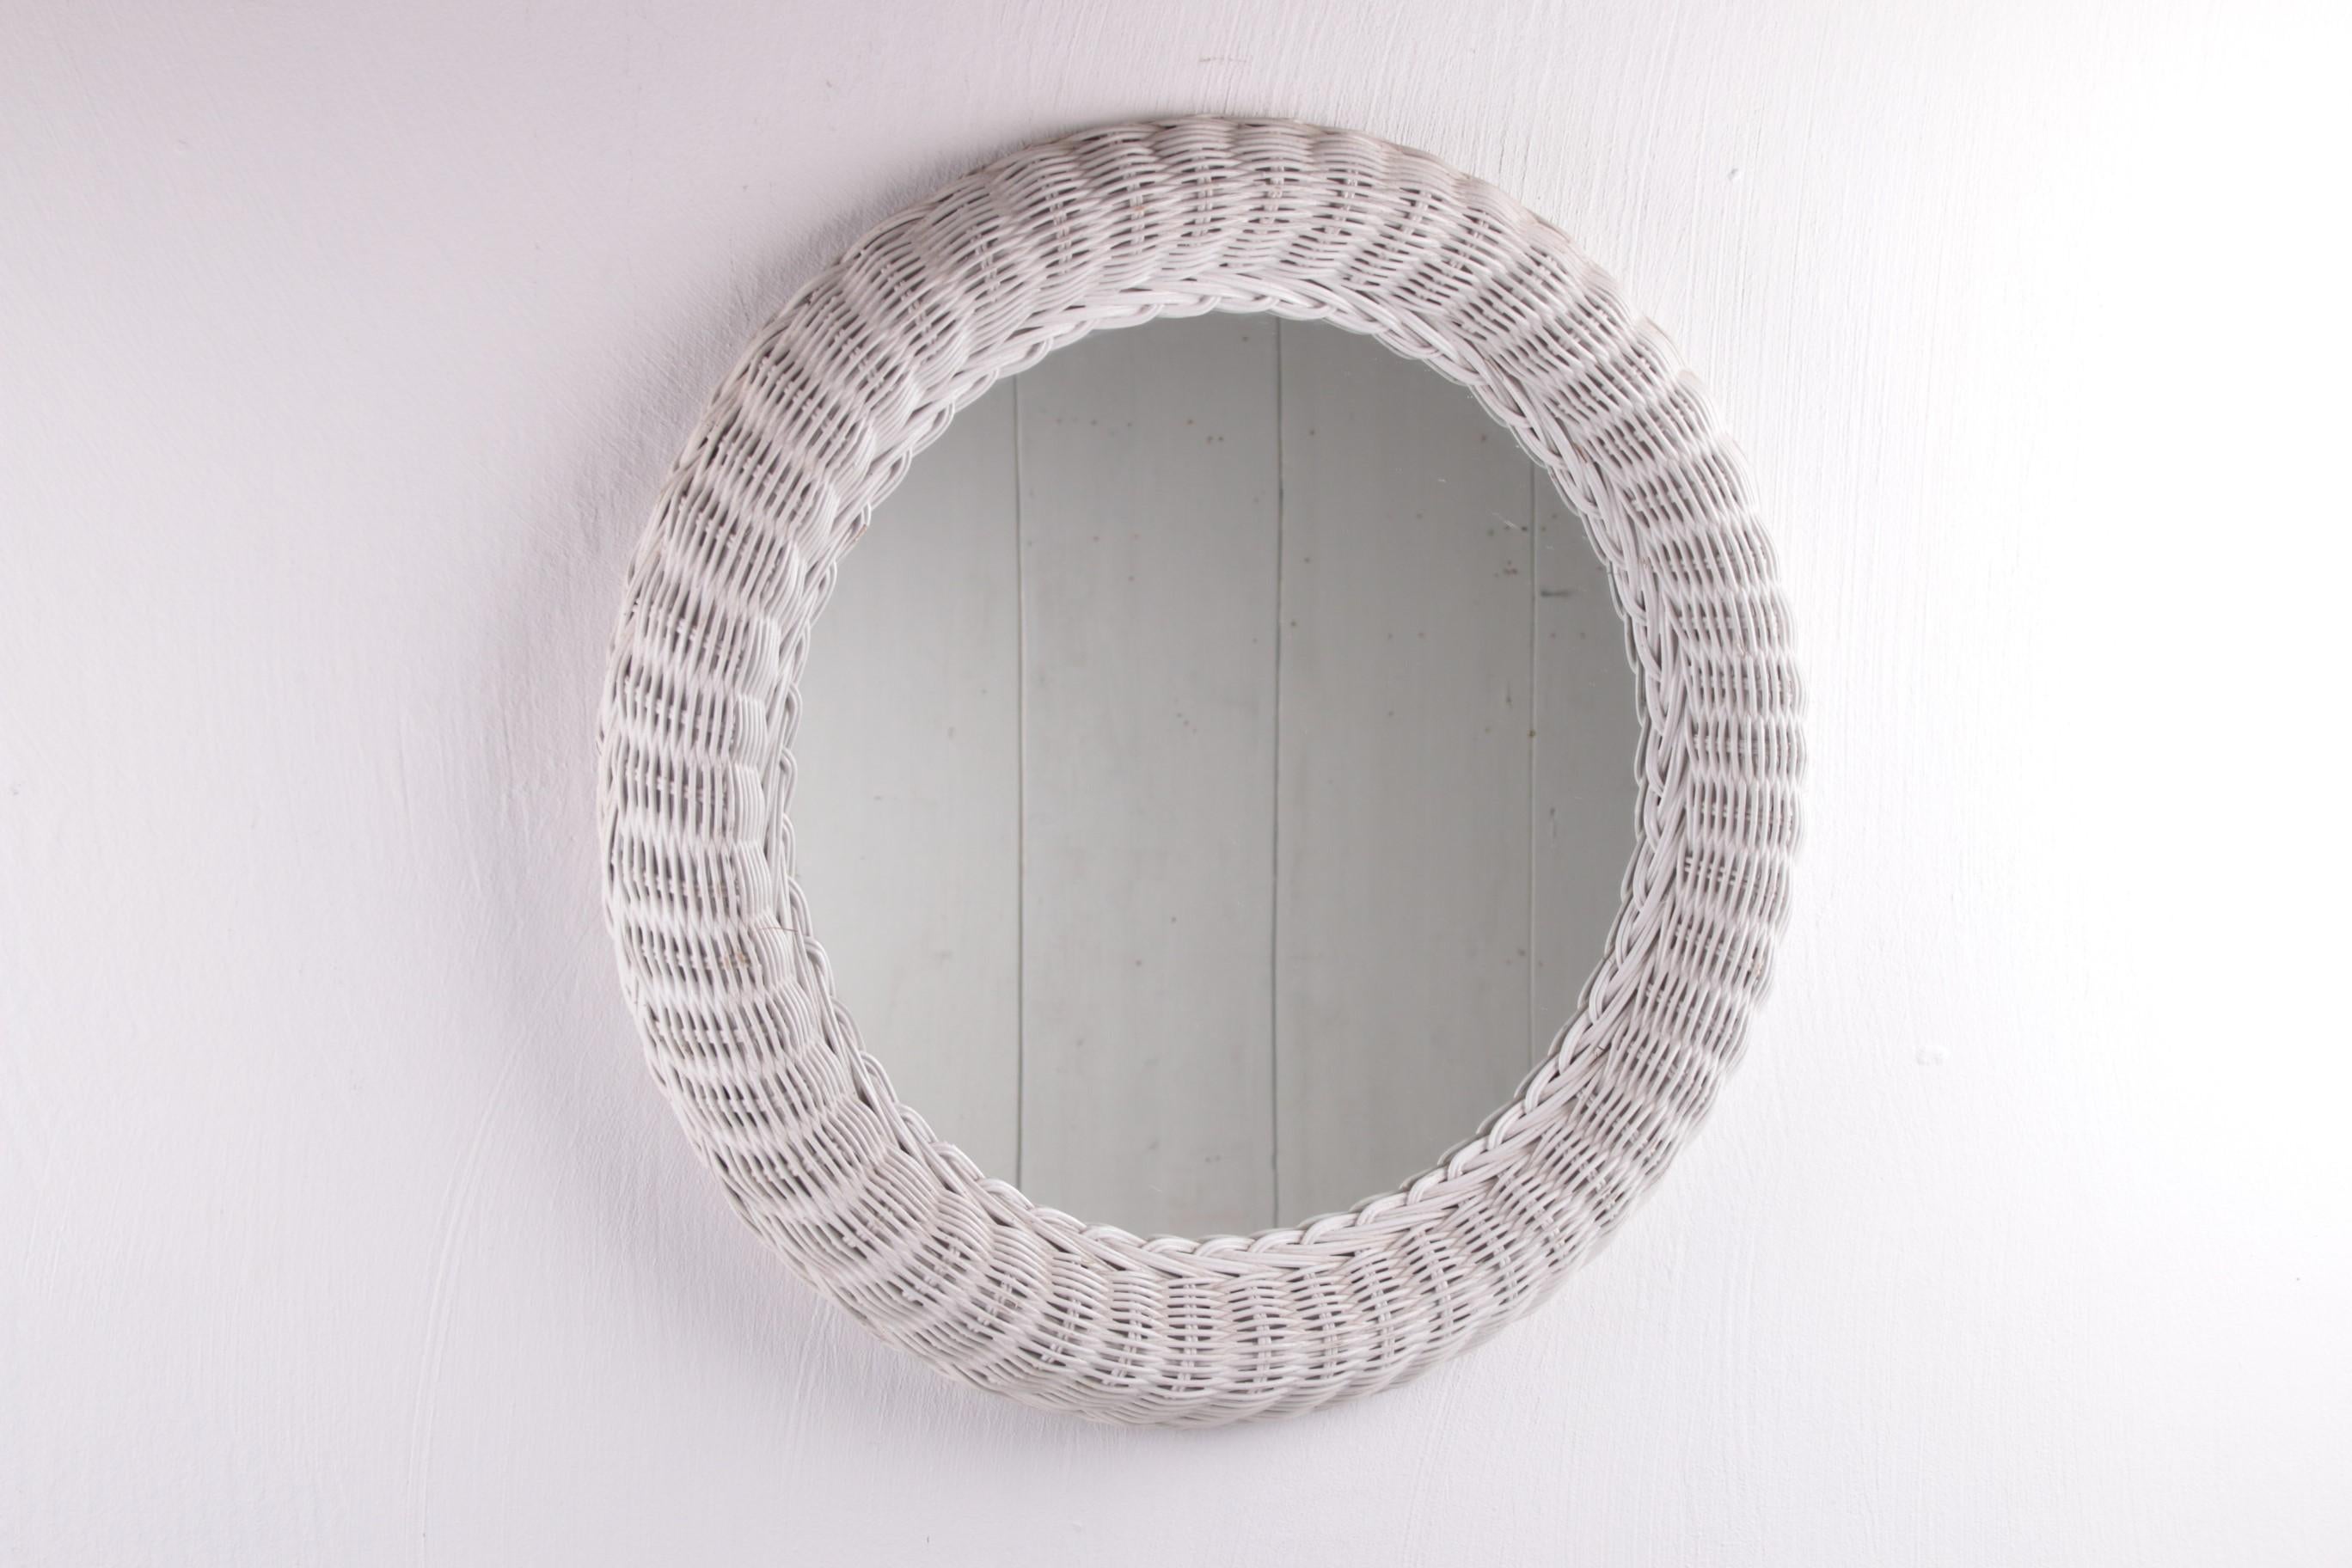 Miroir scandinave rond en rotin blanc.


Il s'agit d'un joli miroir en rotin de couleur blanche.

Le miroir a probablement été produit au Danemark vers 1960. Il a un bel aspect habité et s'intègre à tous les intérieurs grâce à son design rond et